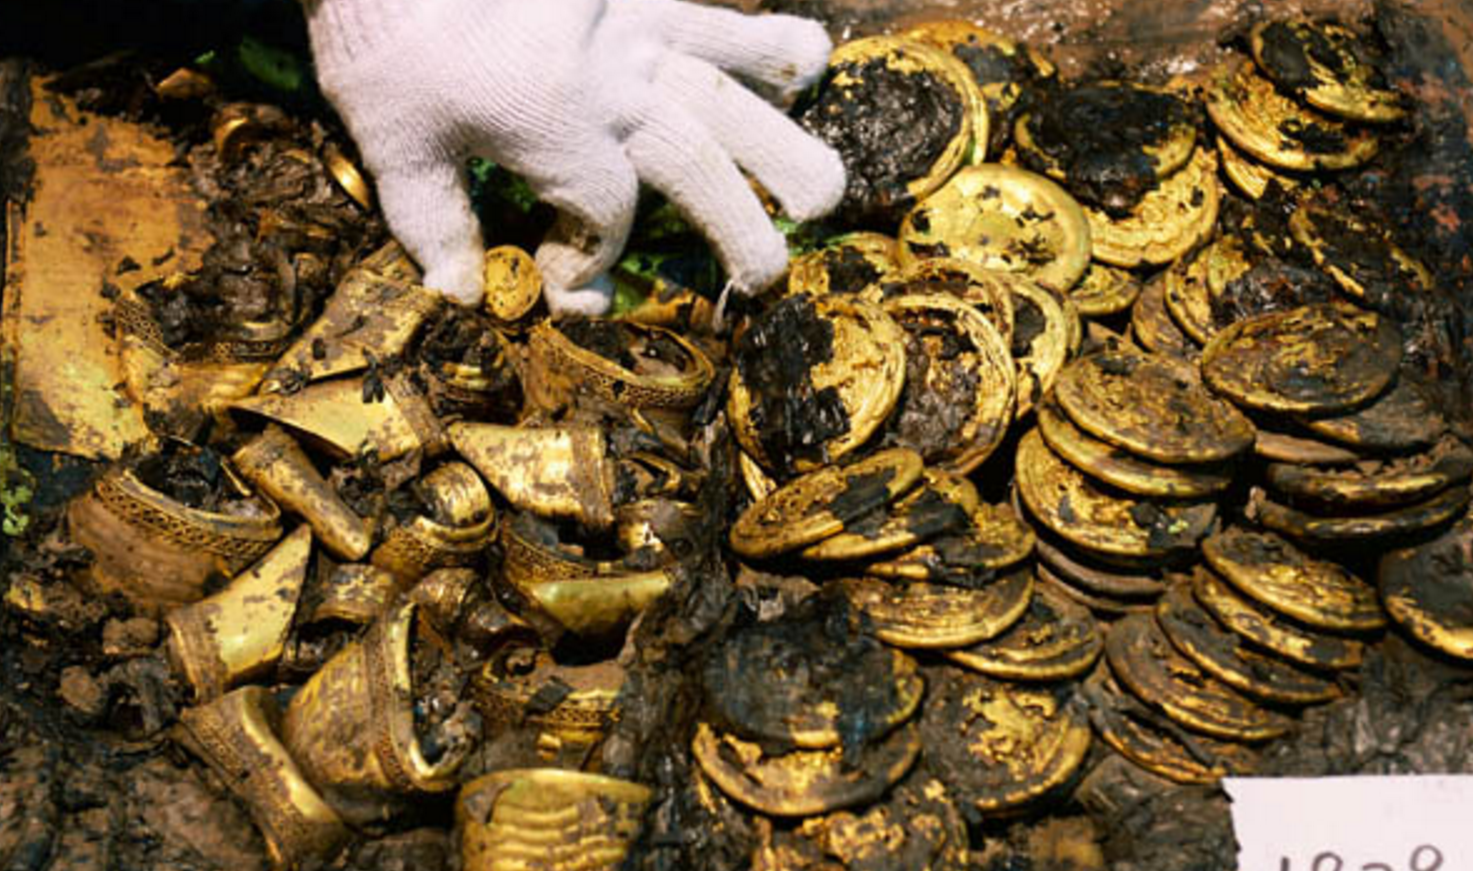 西汉海昏侯之墓,盗墓者光顾多次无人得手,内存有黄金上百公斤